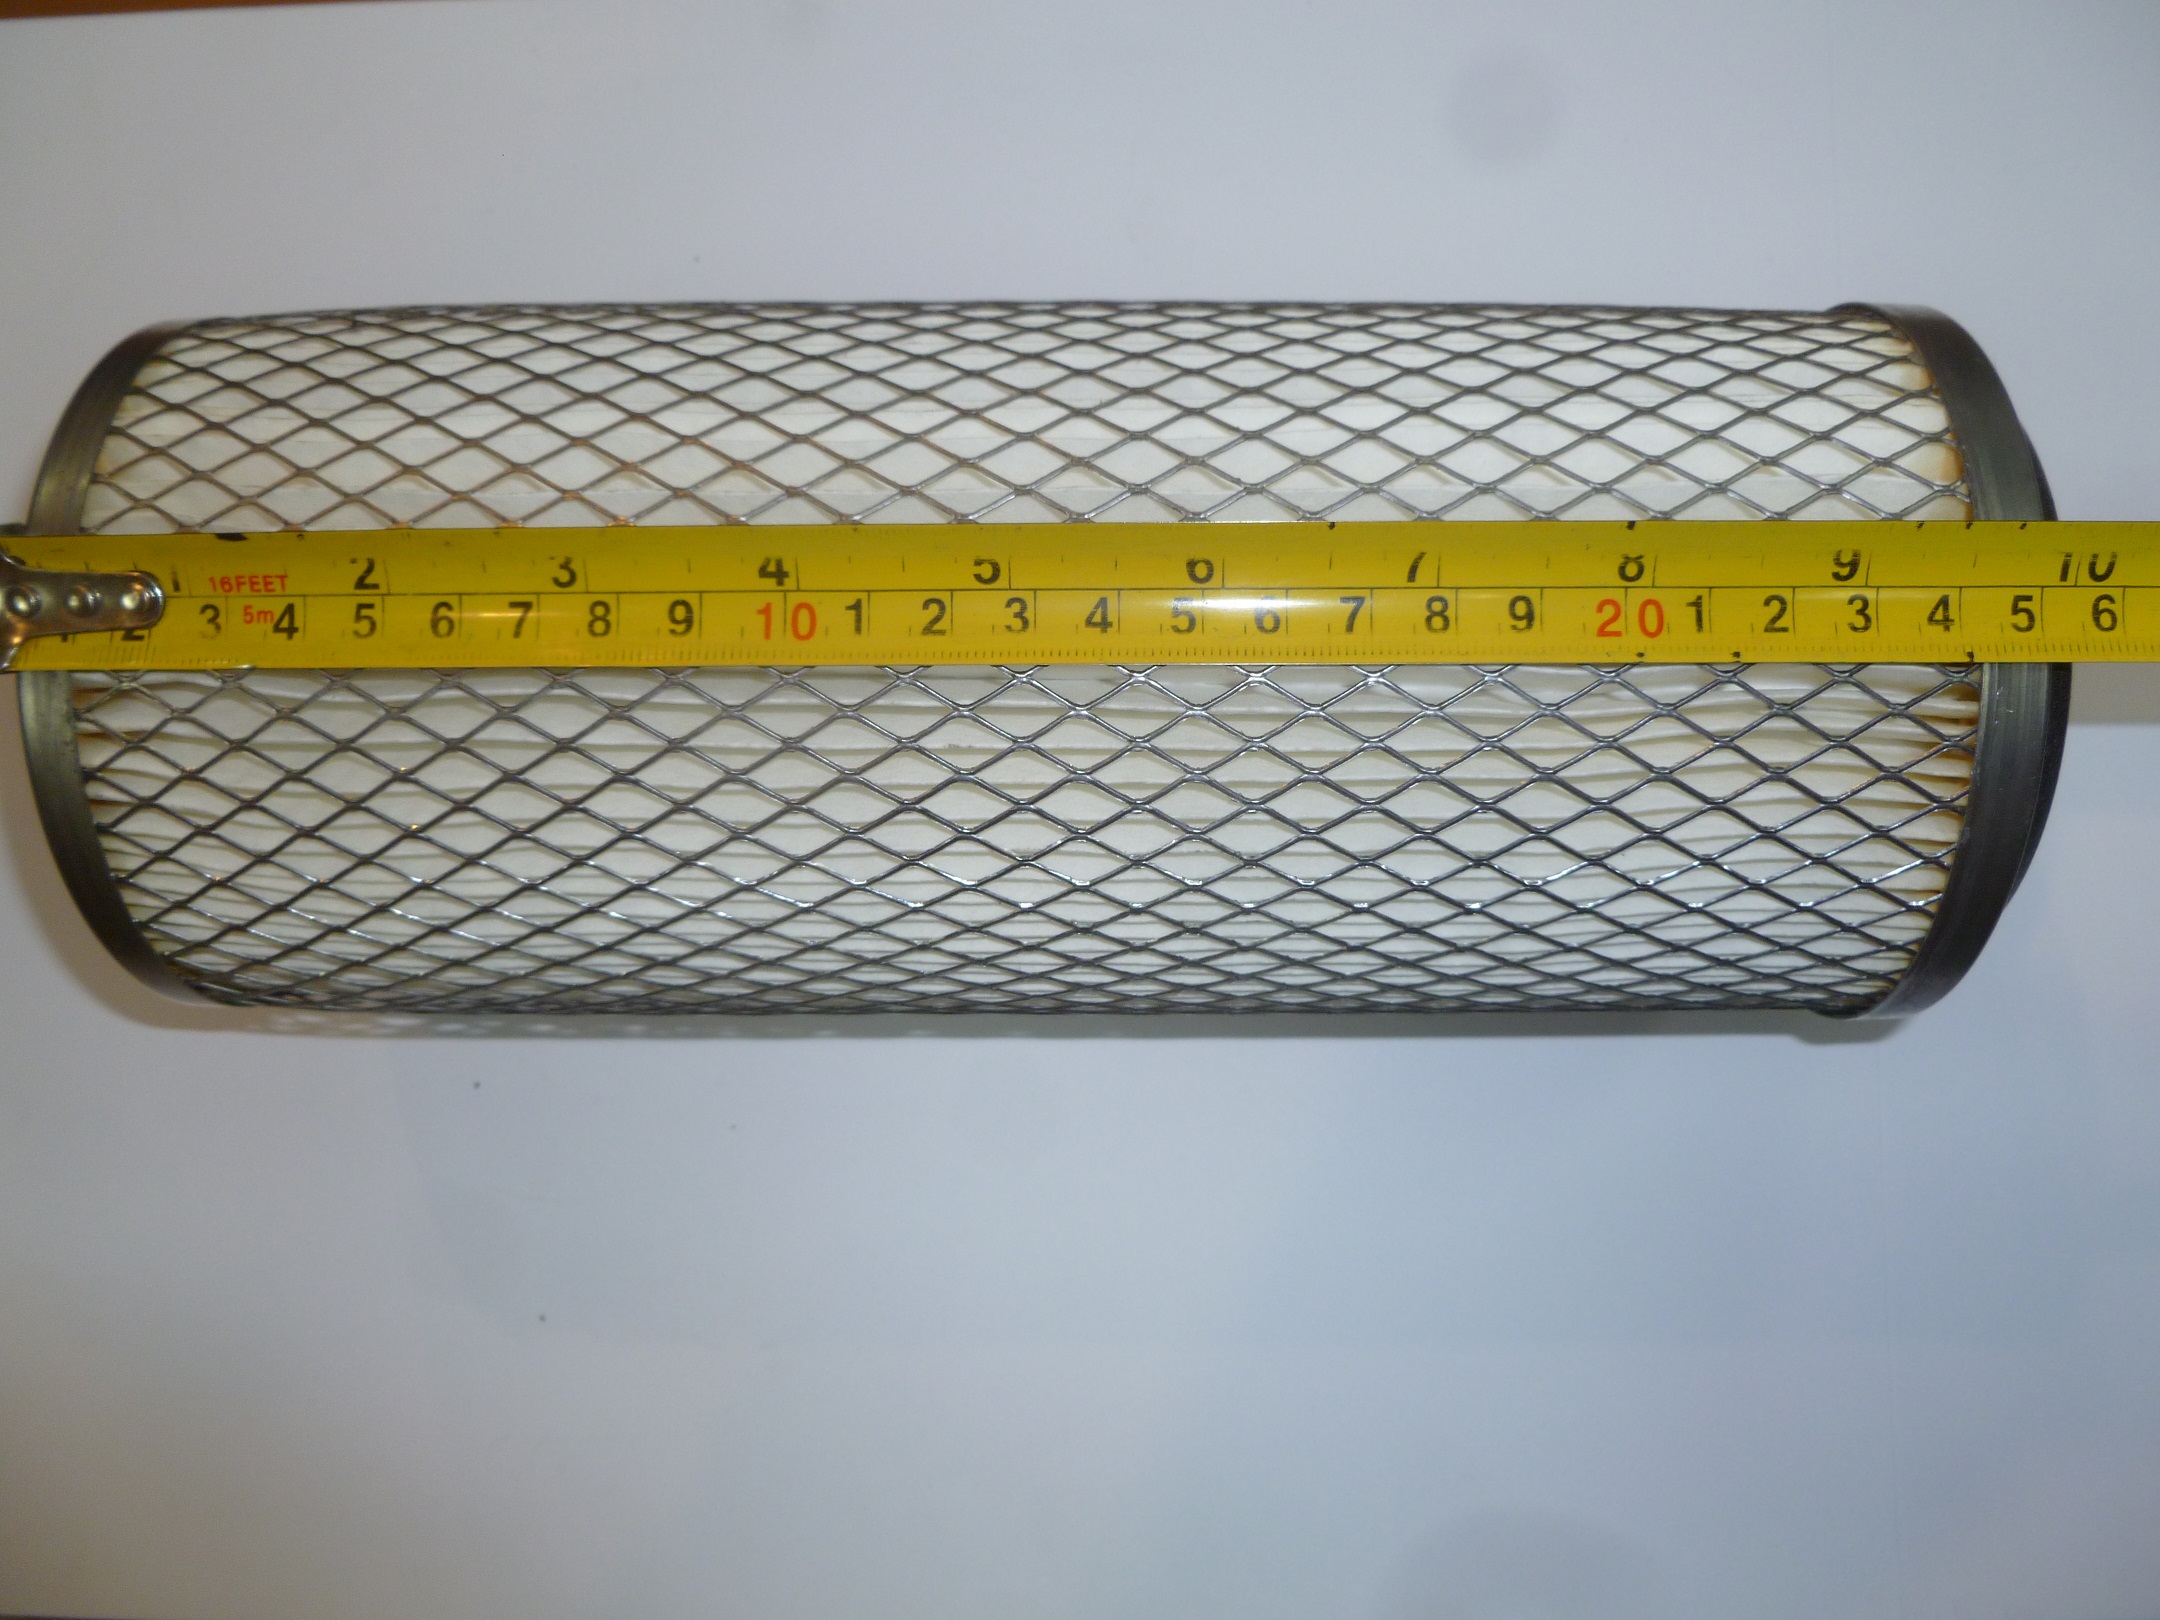 Фильтр воздушный одинарный цилиндрический Ricardo Y480BD;TDK 14,17,22 4L (104х60х260 ) /Air filter element (KW1025-0010)(ЕКО -01.372)